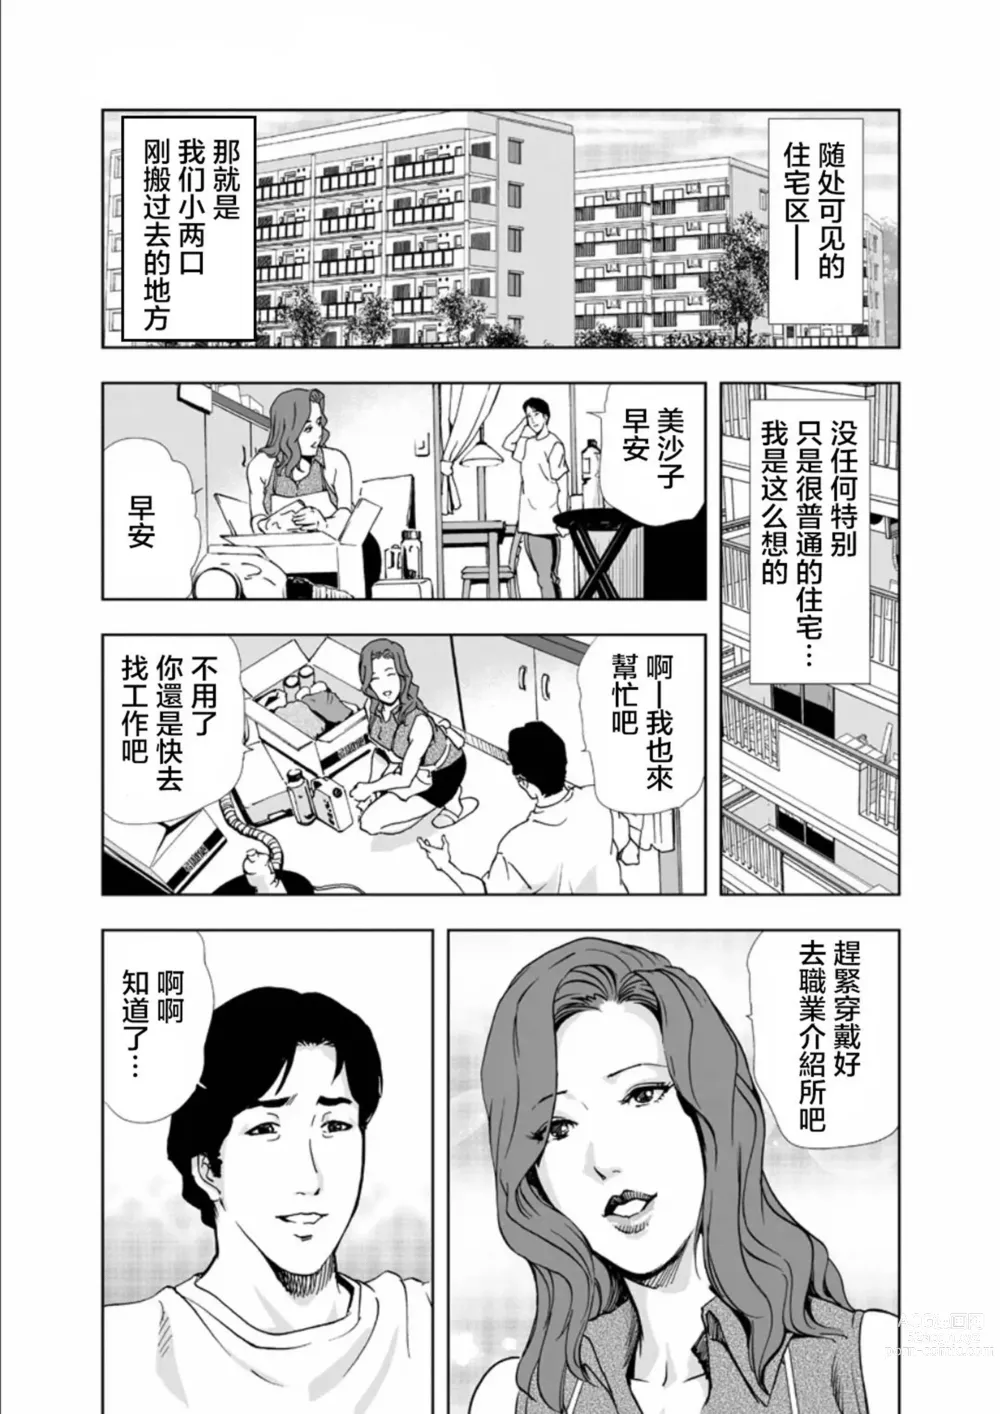 Page 2 of manga Netorare 1